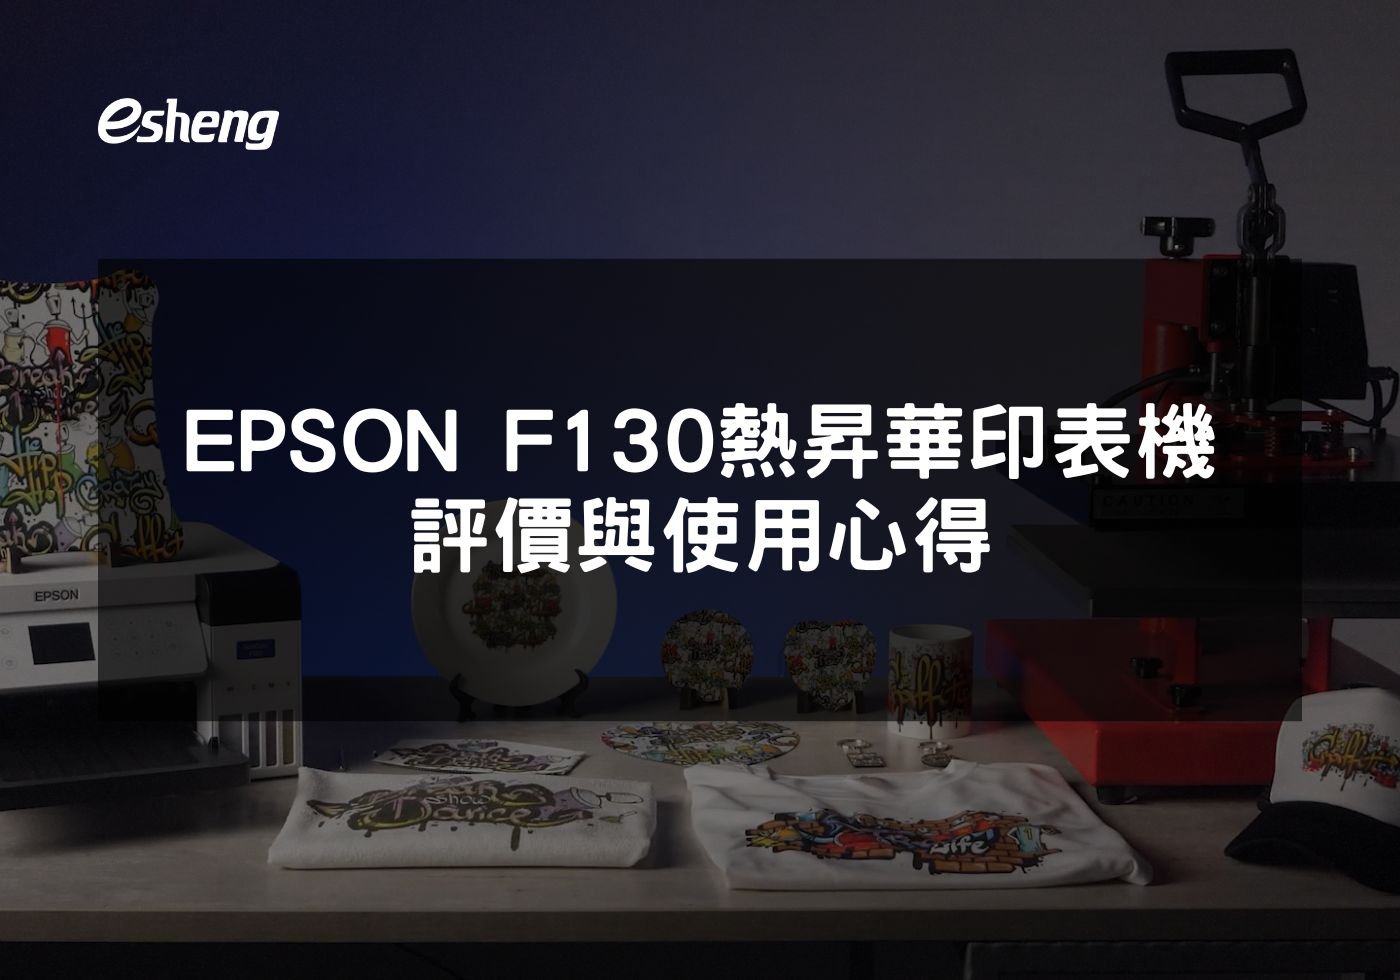 閱讀更多文章 EPSON F130熱昇華印表機評價與使用心得